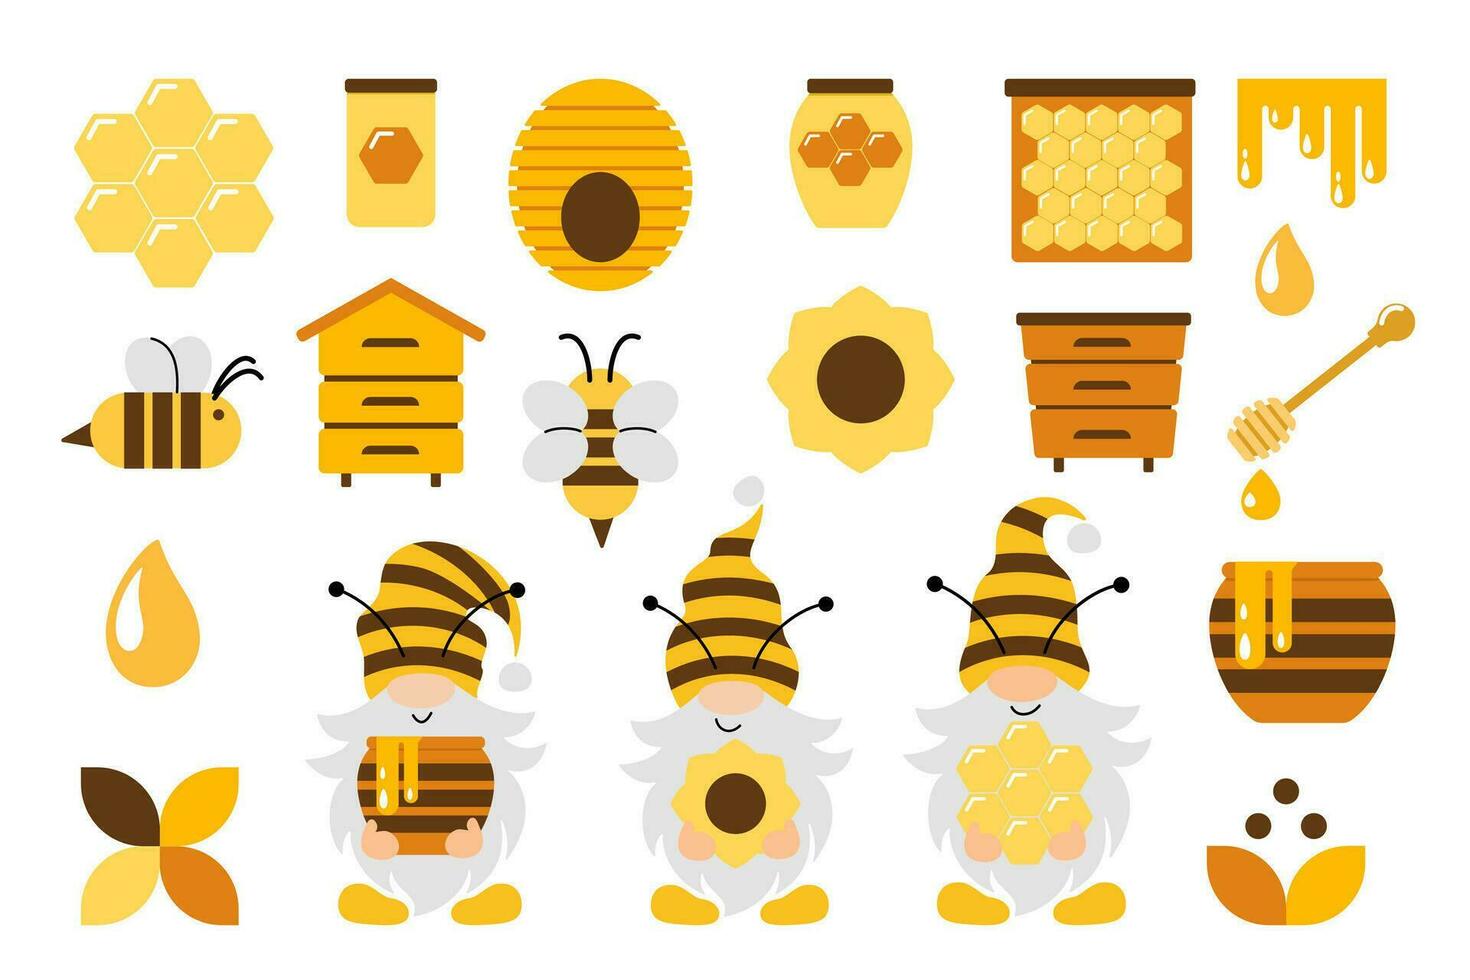 honing bijen vector set. schattig bij tekenfilm verzameling. grappig illustraties, vlak stijl pictogrammen. bijenteelt klem kunst. koningin bij, kabouters, bijenkorven, grenzen, bloemen, honingraten.